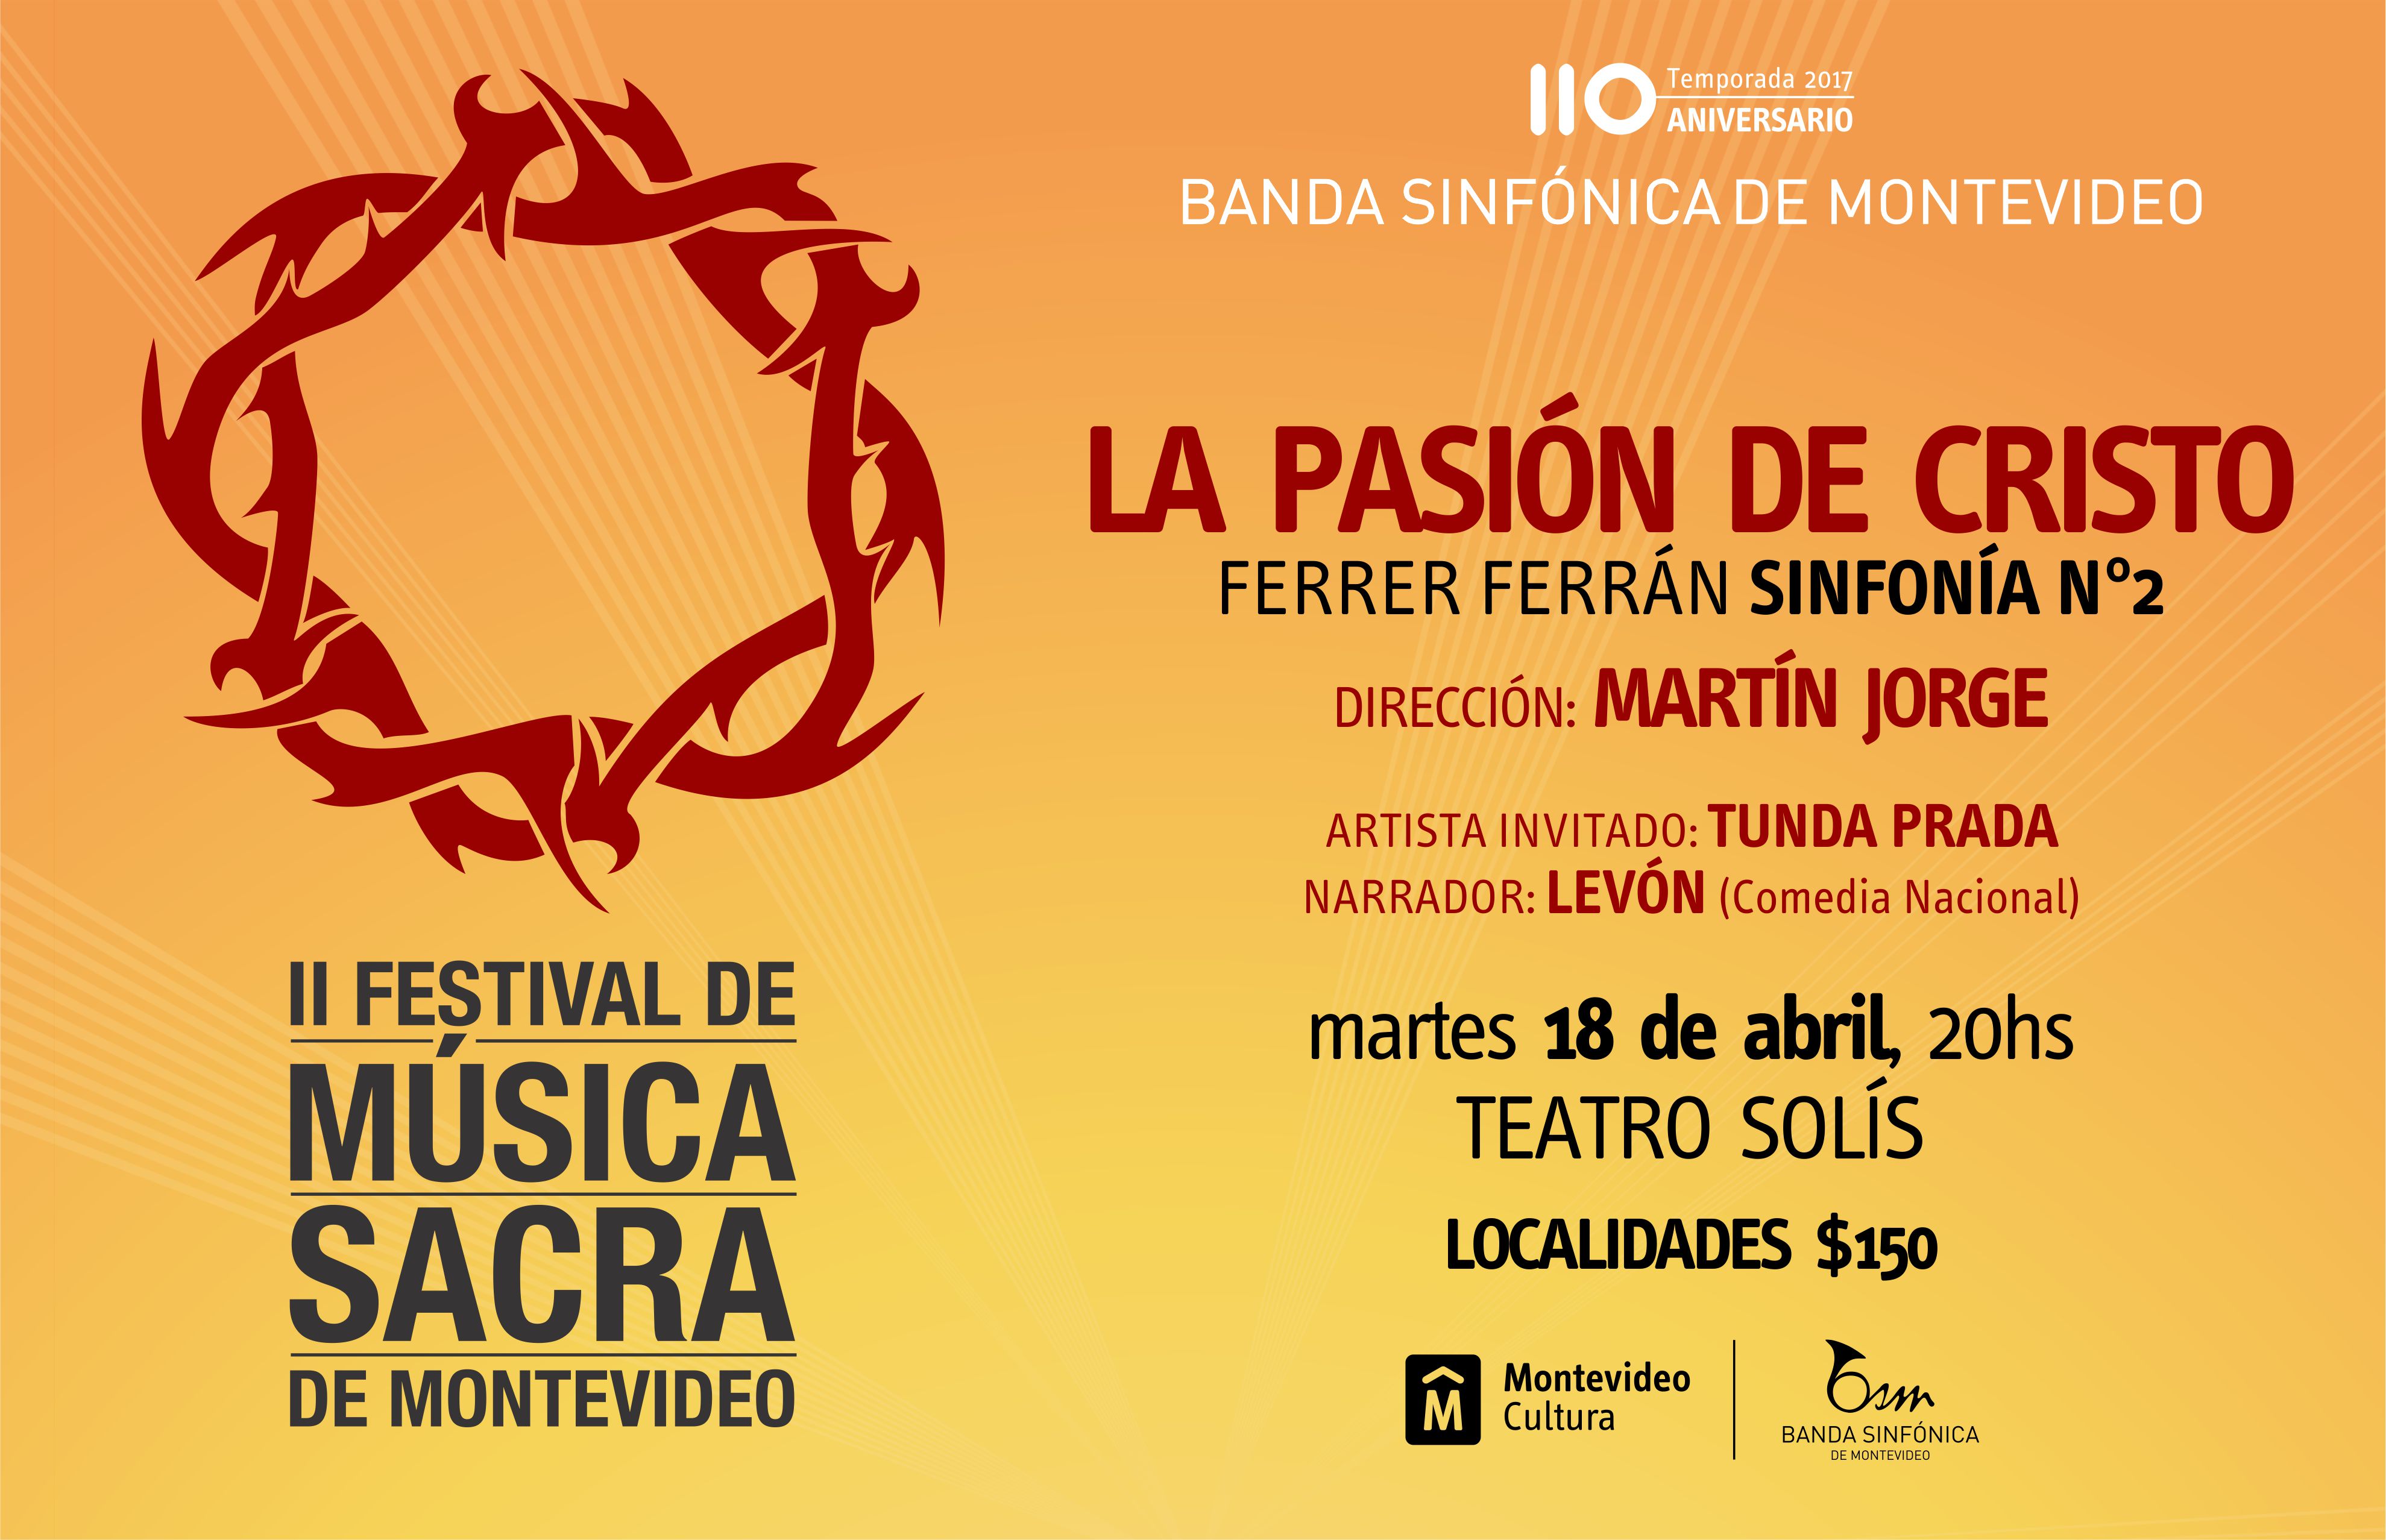 Banda Sinfónica de Montevideo en su Temporada 110 Aniversario presenta LA PASIÓN DE CRISTO